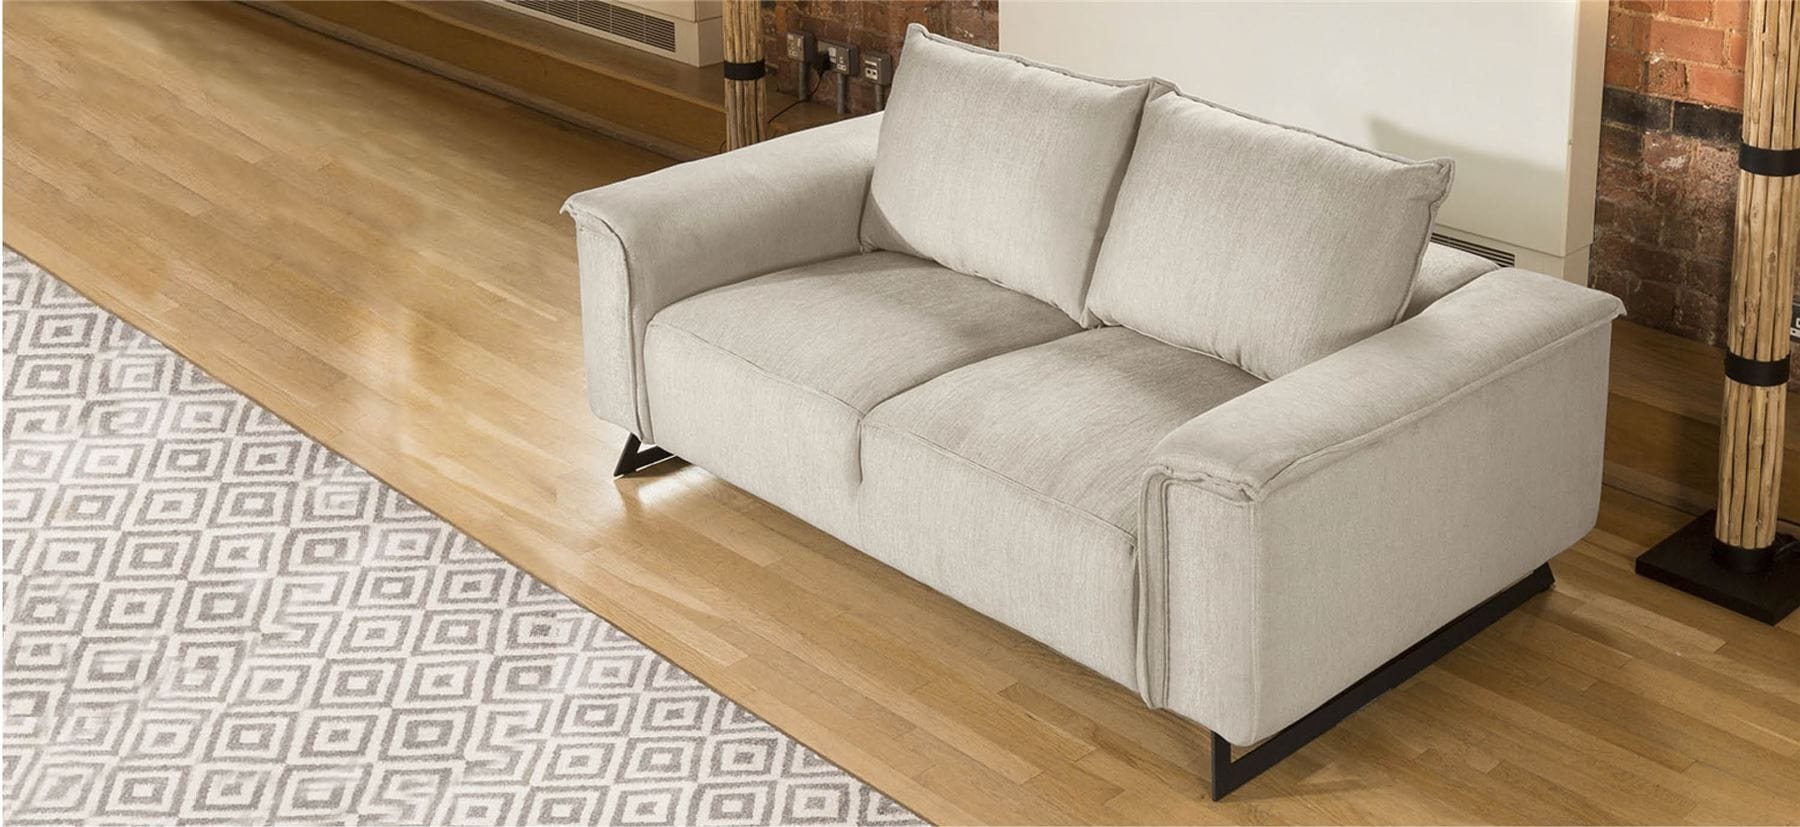 Quatropi Quatropi Effie Premium Large 2 Seater Sofa Soft Sit Many Fabrics 2.2mt